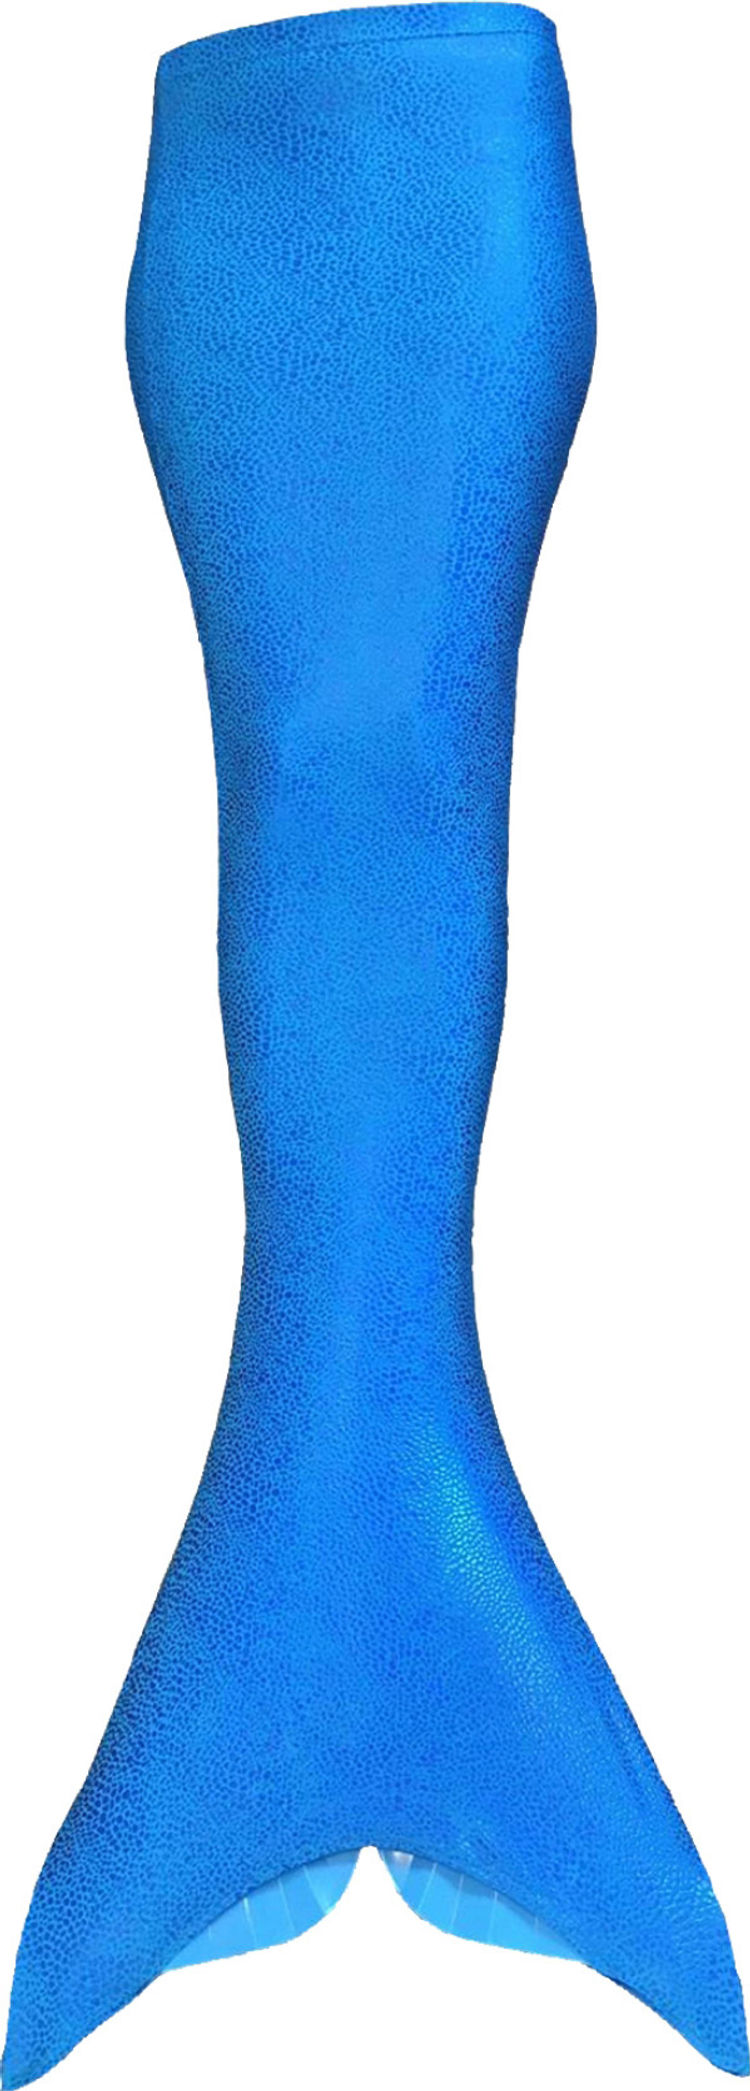 Aquatail - Flosse für Meerjungfrauen blau bestellen | Weltbild.ch